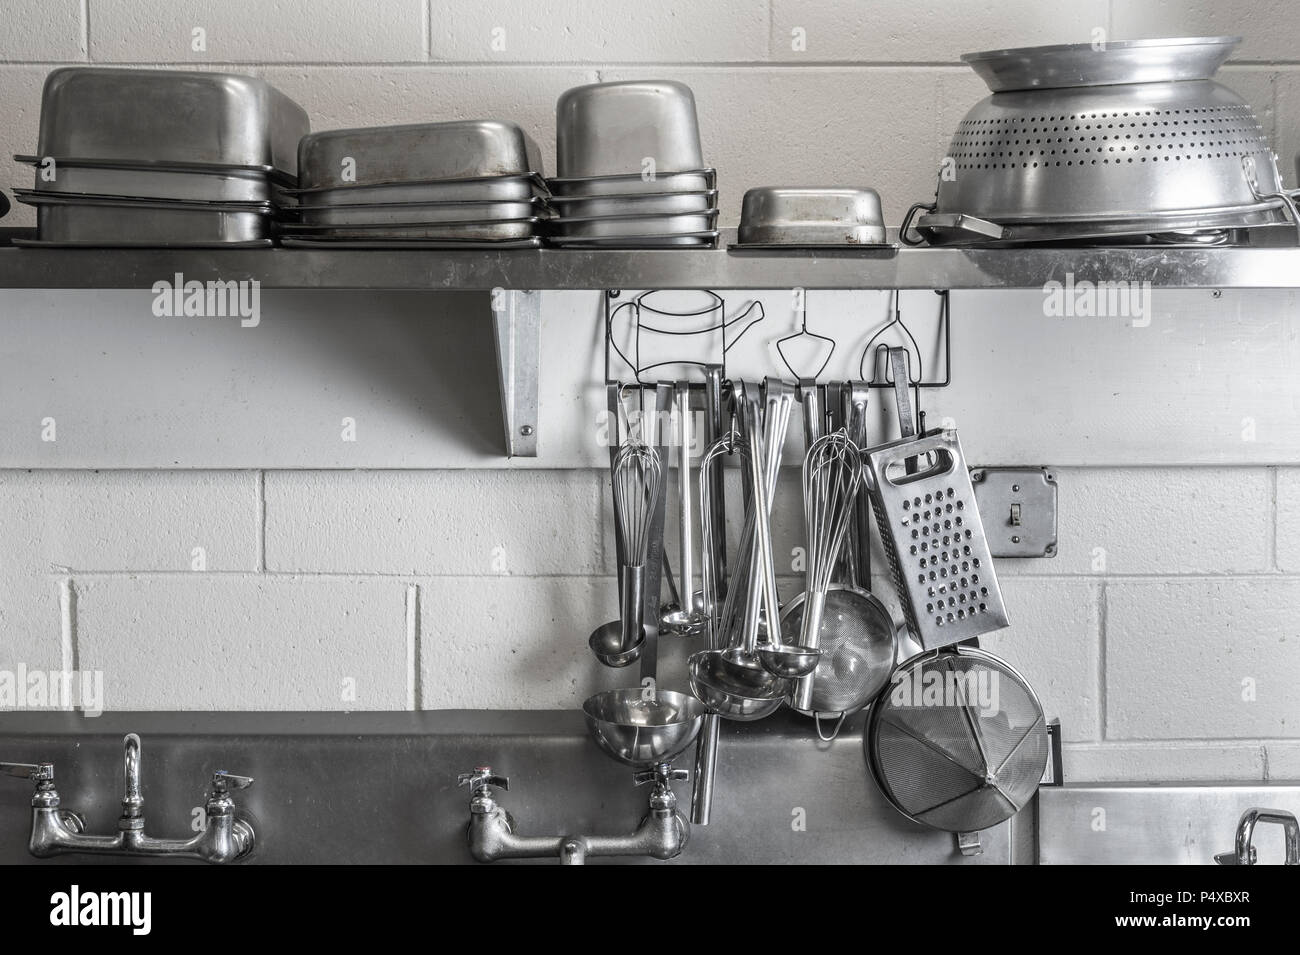 Restaurante cocina comercial utensilios de cocina de acero inoxidable Foto de stock